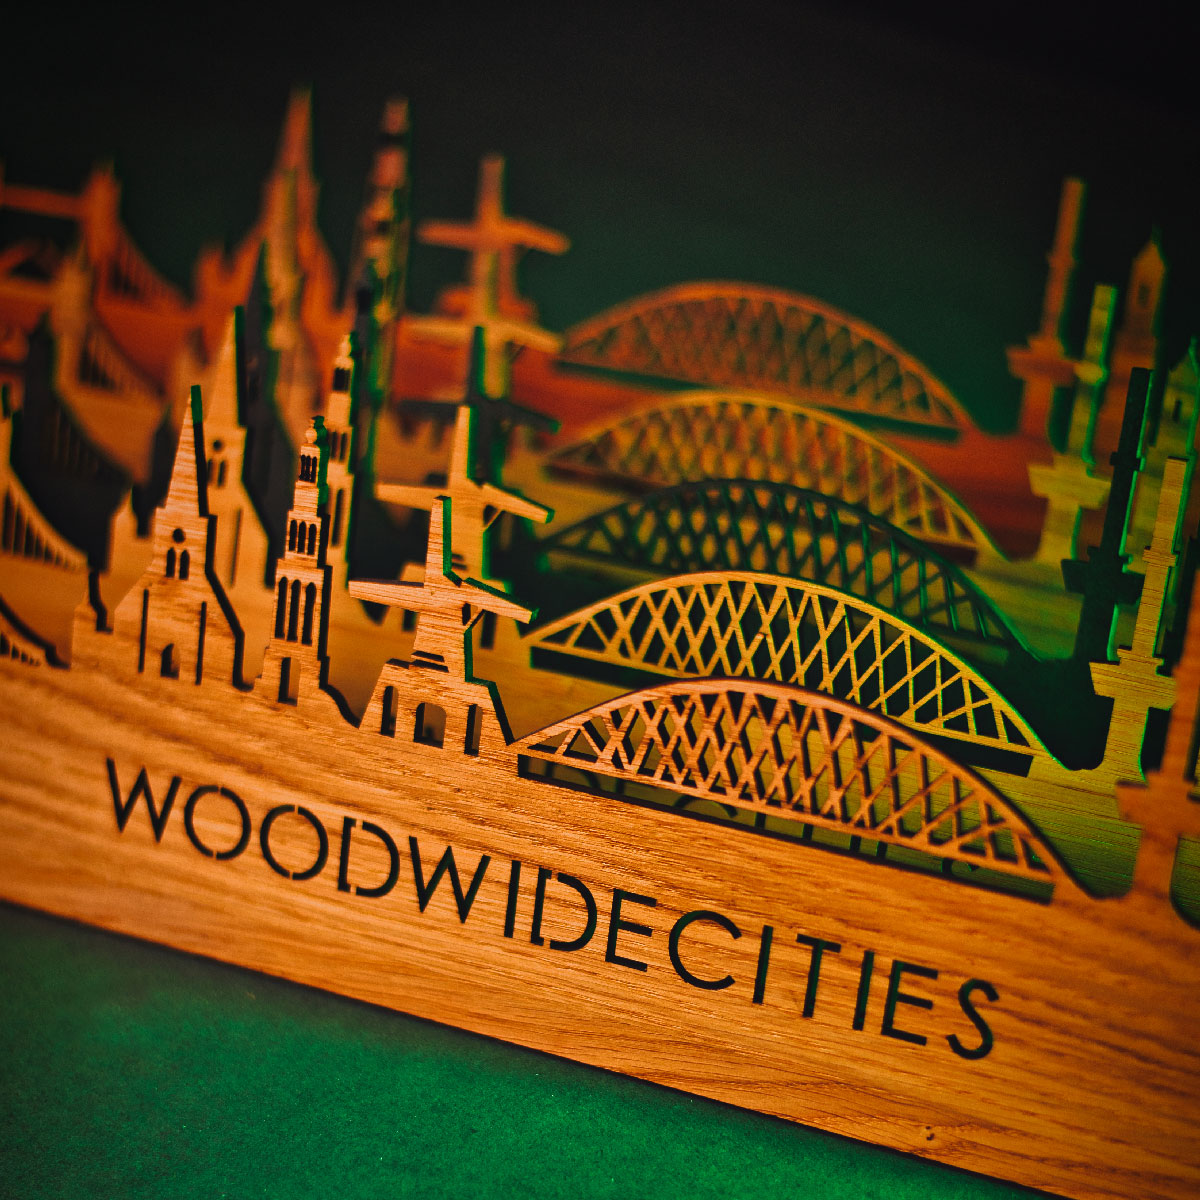 Skyline Klok Rijssen Palissander houten cadeau wanddecoratie relatiegeschenk van WoodWideCities